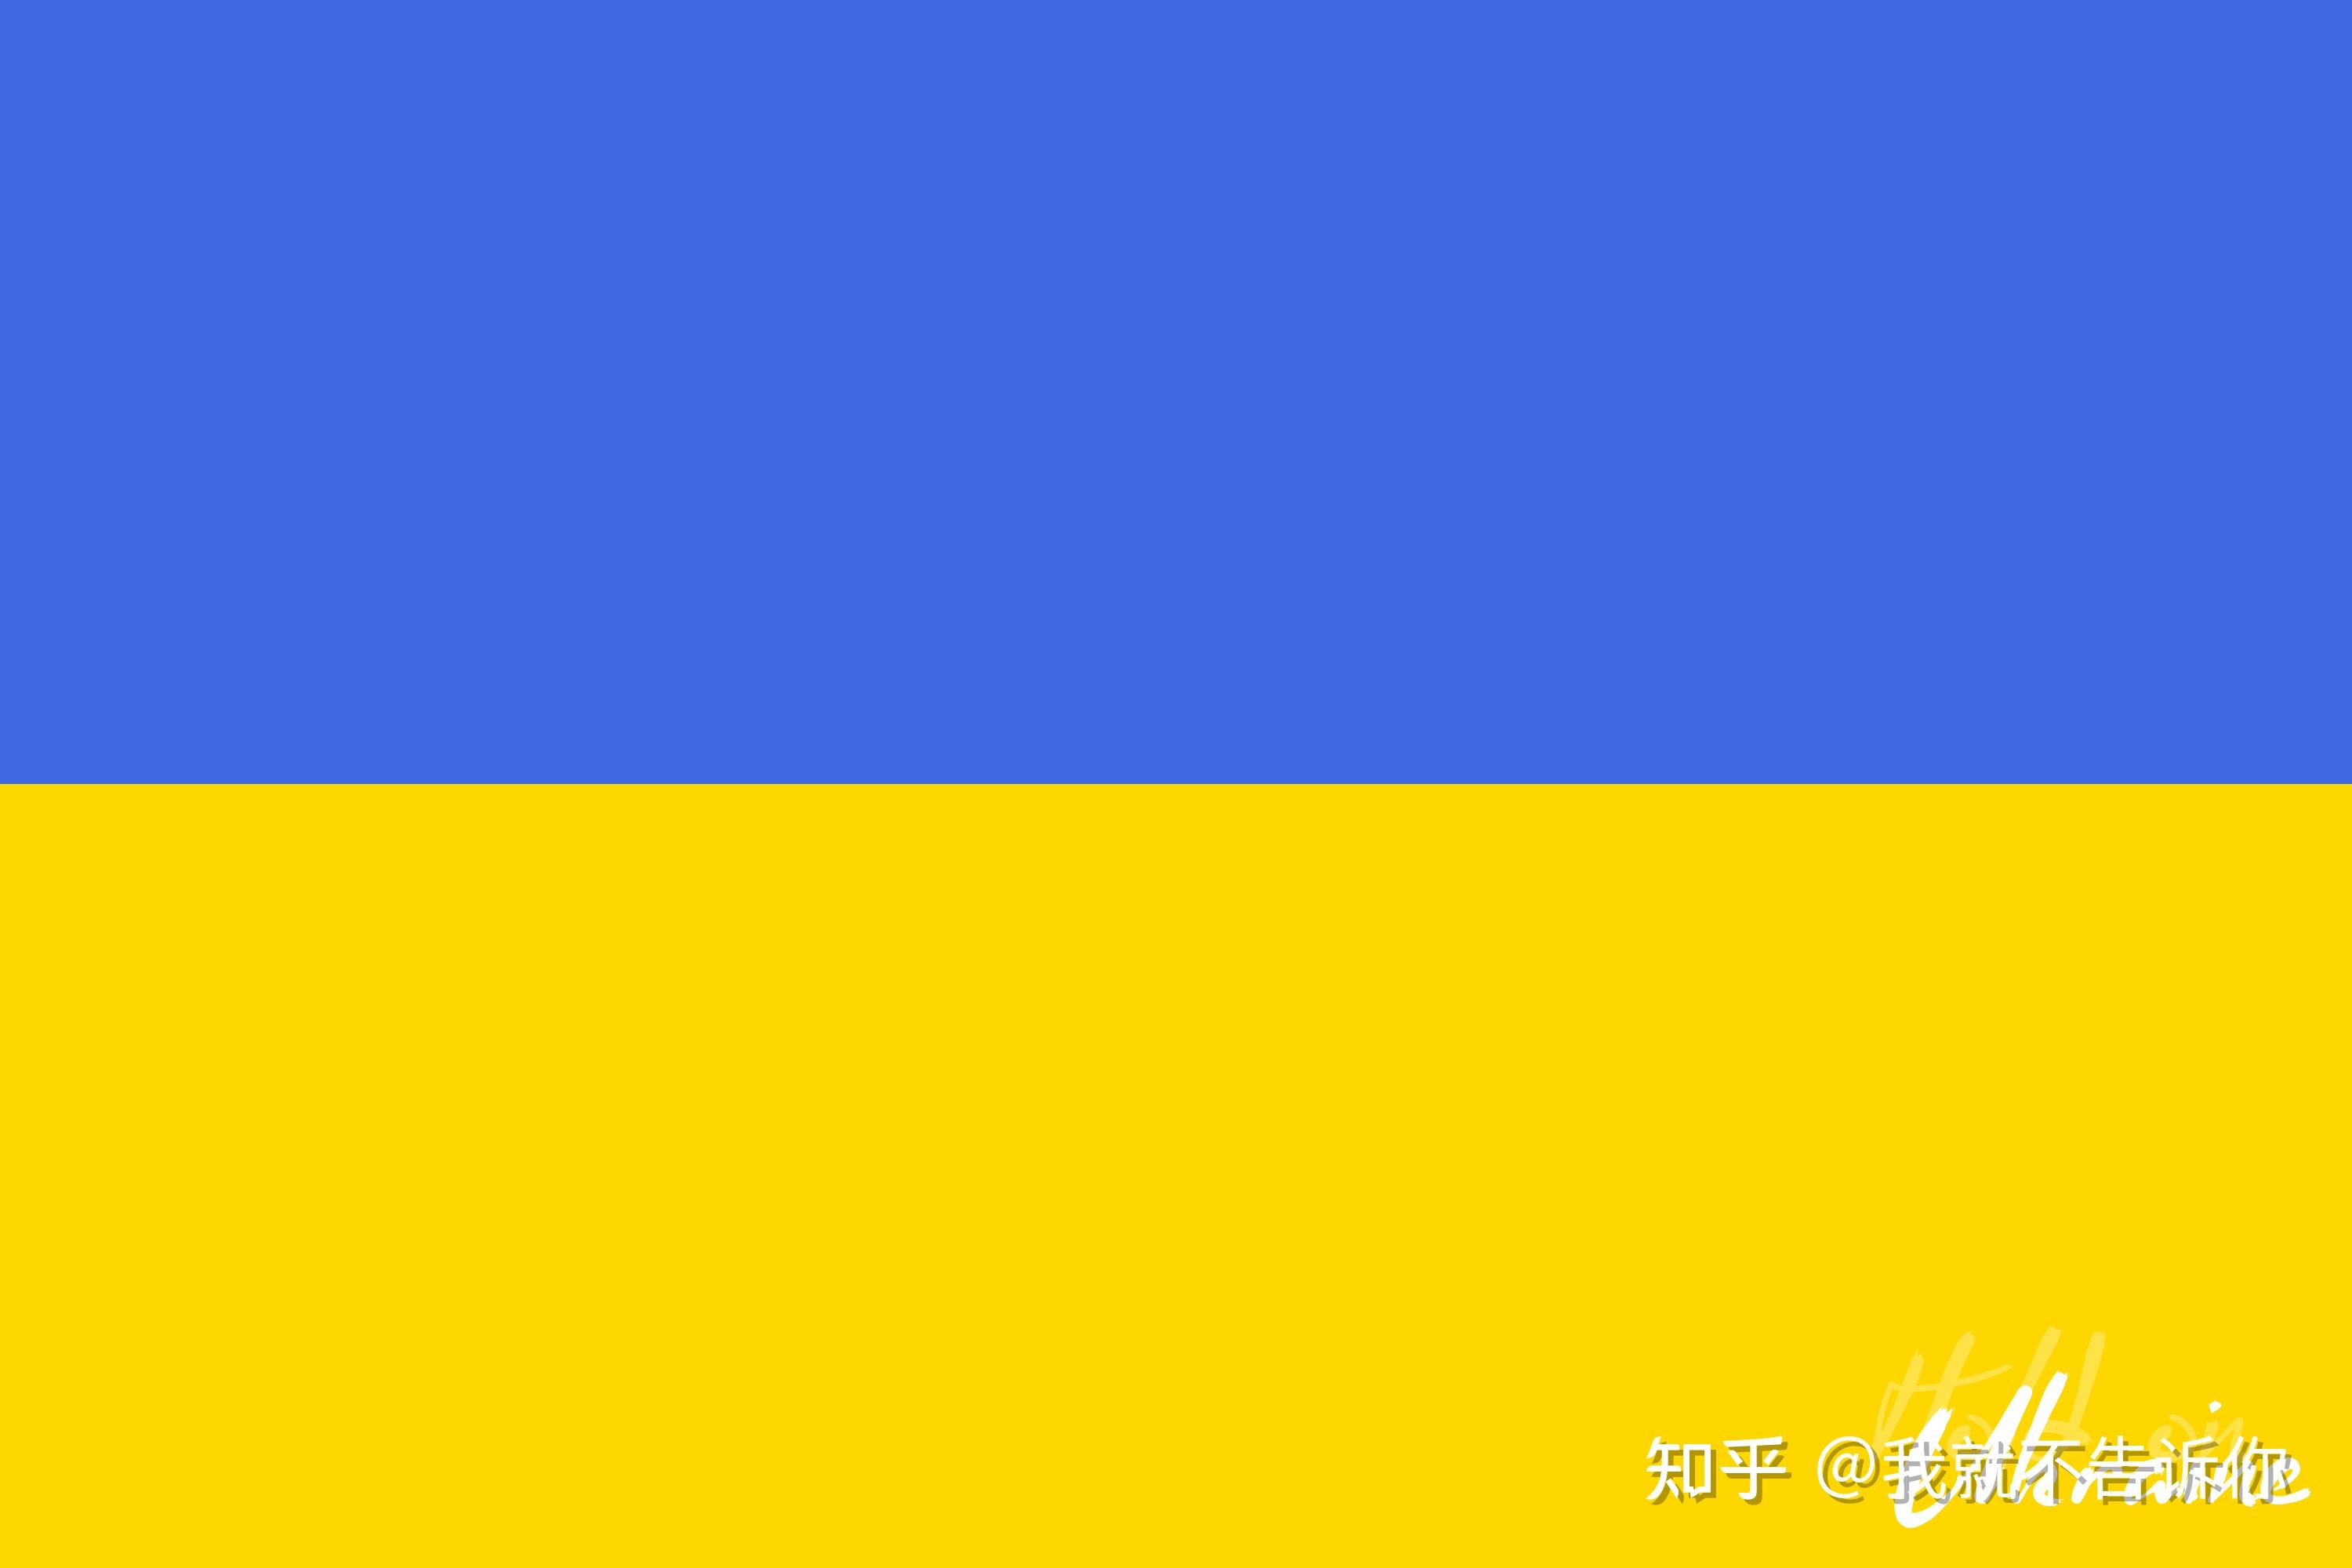 由乌克兰冲突看条形国旗